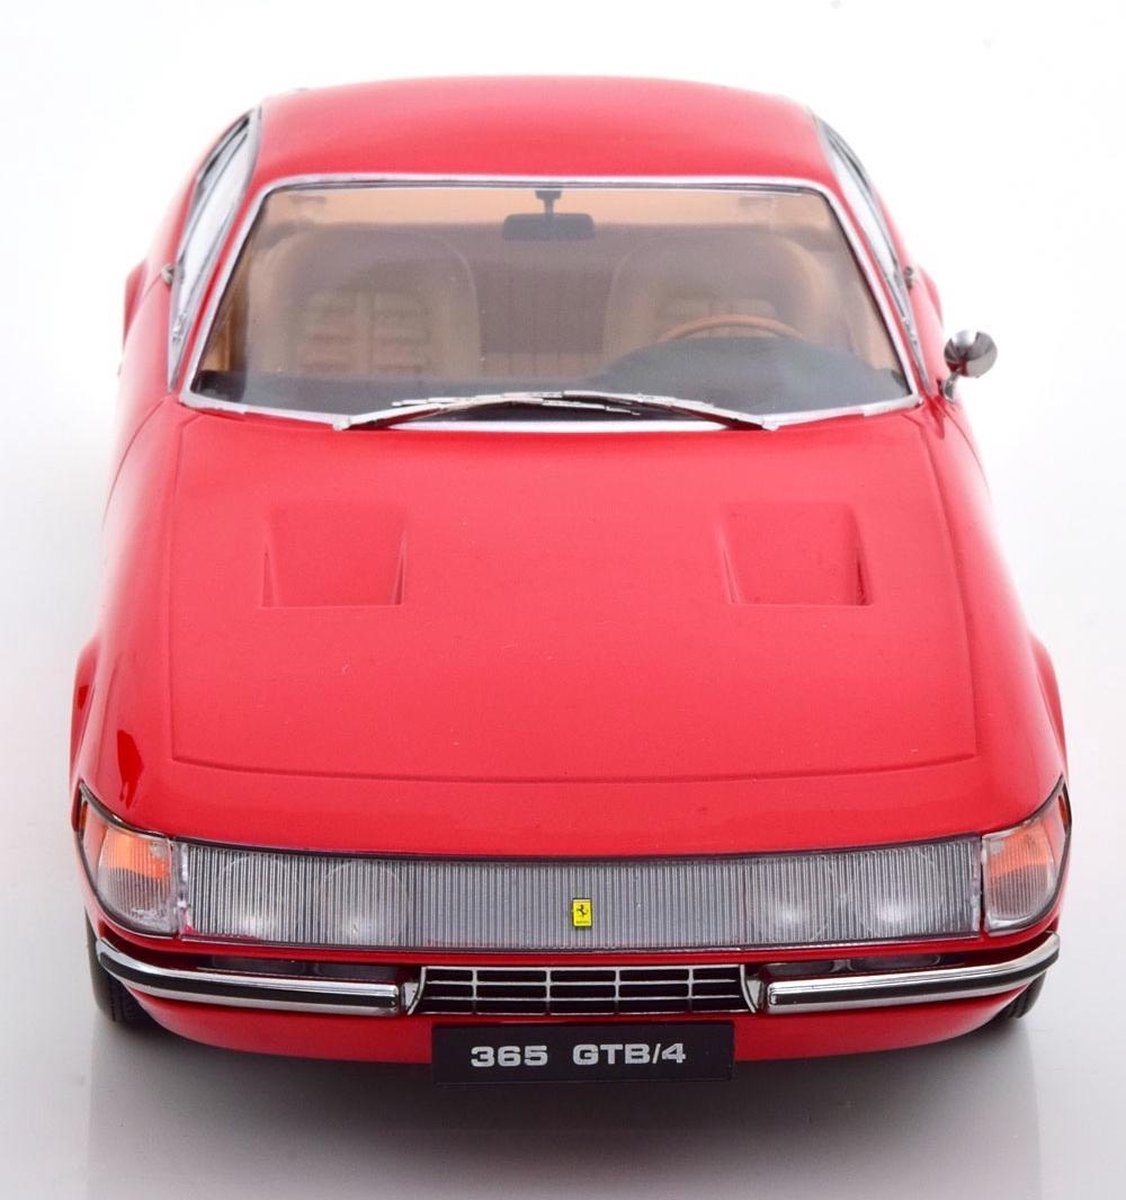 Ferrari 365 GTB/4 1969 - 1:18 - KK Scale